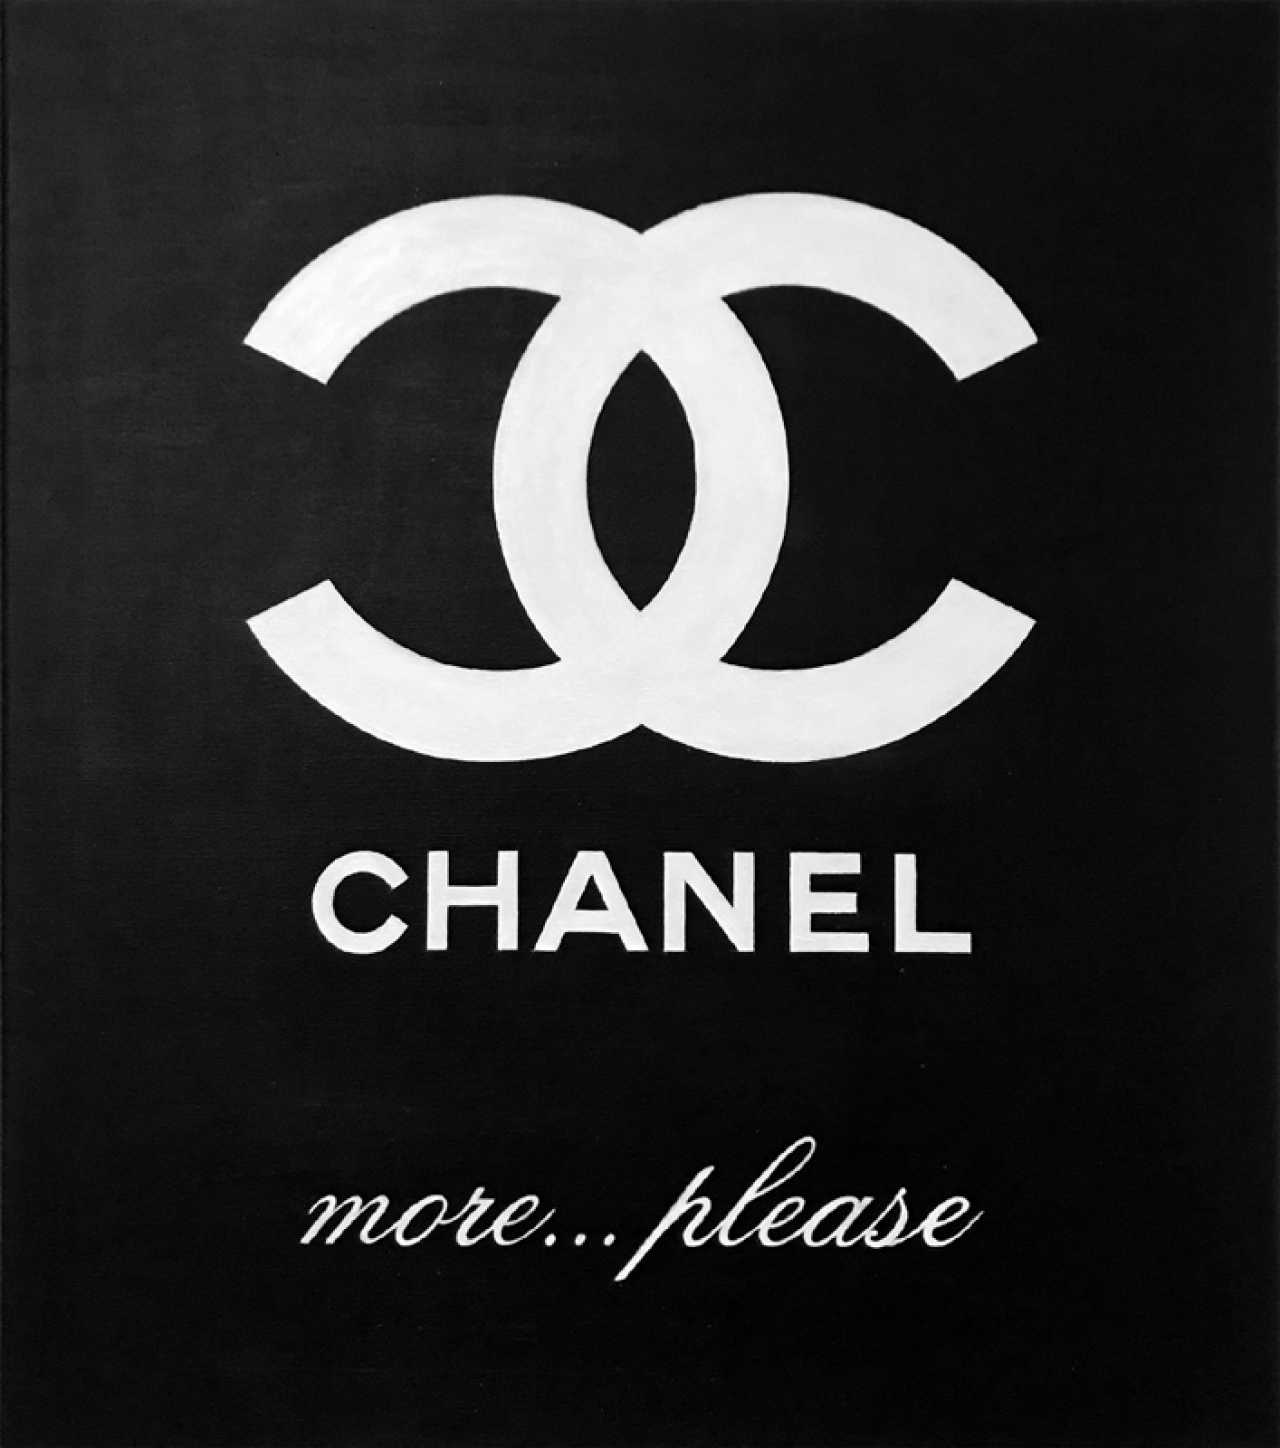 Seotitlegalereya Rabota Hudozhnika Marina Rusalka Artist Kriviy Rih Luchshie Hudozhestvennye Proizvedeniya Kotorye V Prodazhe 299 More Chanel More Chanel Painting